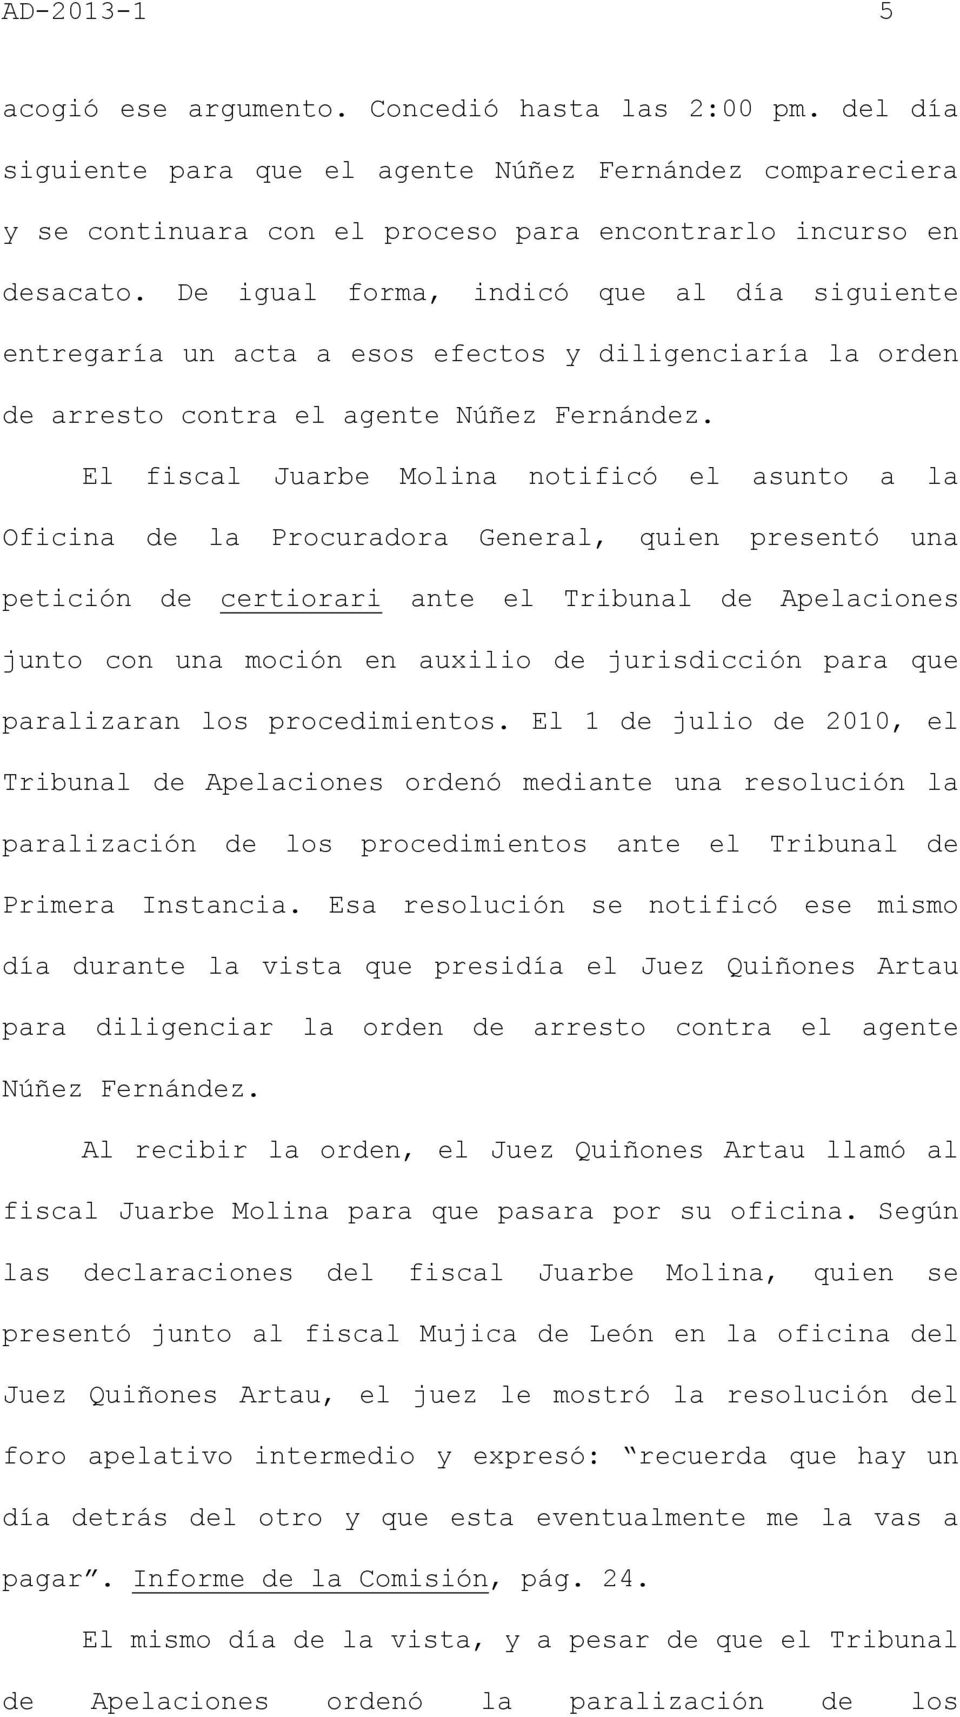 El fiscal Juarbe Molina notificó el asunto a la Oficina de la Procuradora General, quien presentó una petición de certiorari ante el Tribunal de Apelaciones junto con una moción en auxilio de